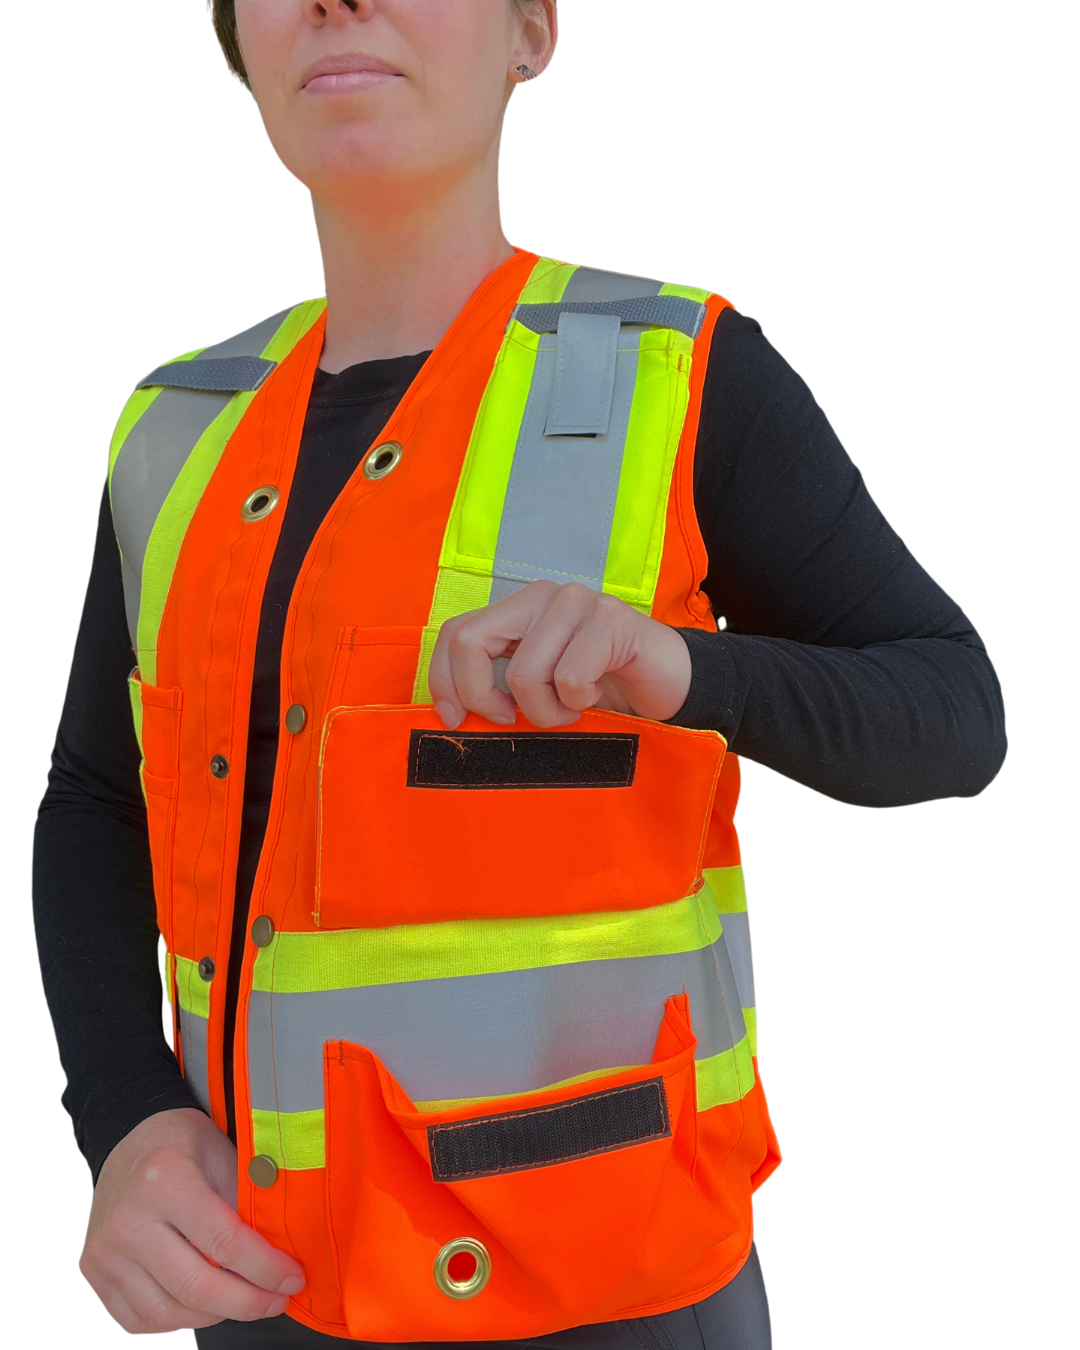 PRESS RELEASE: New CG Surveyor Vest Designed For Women Hits Shelves